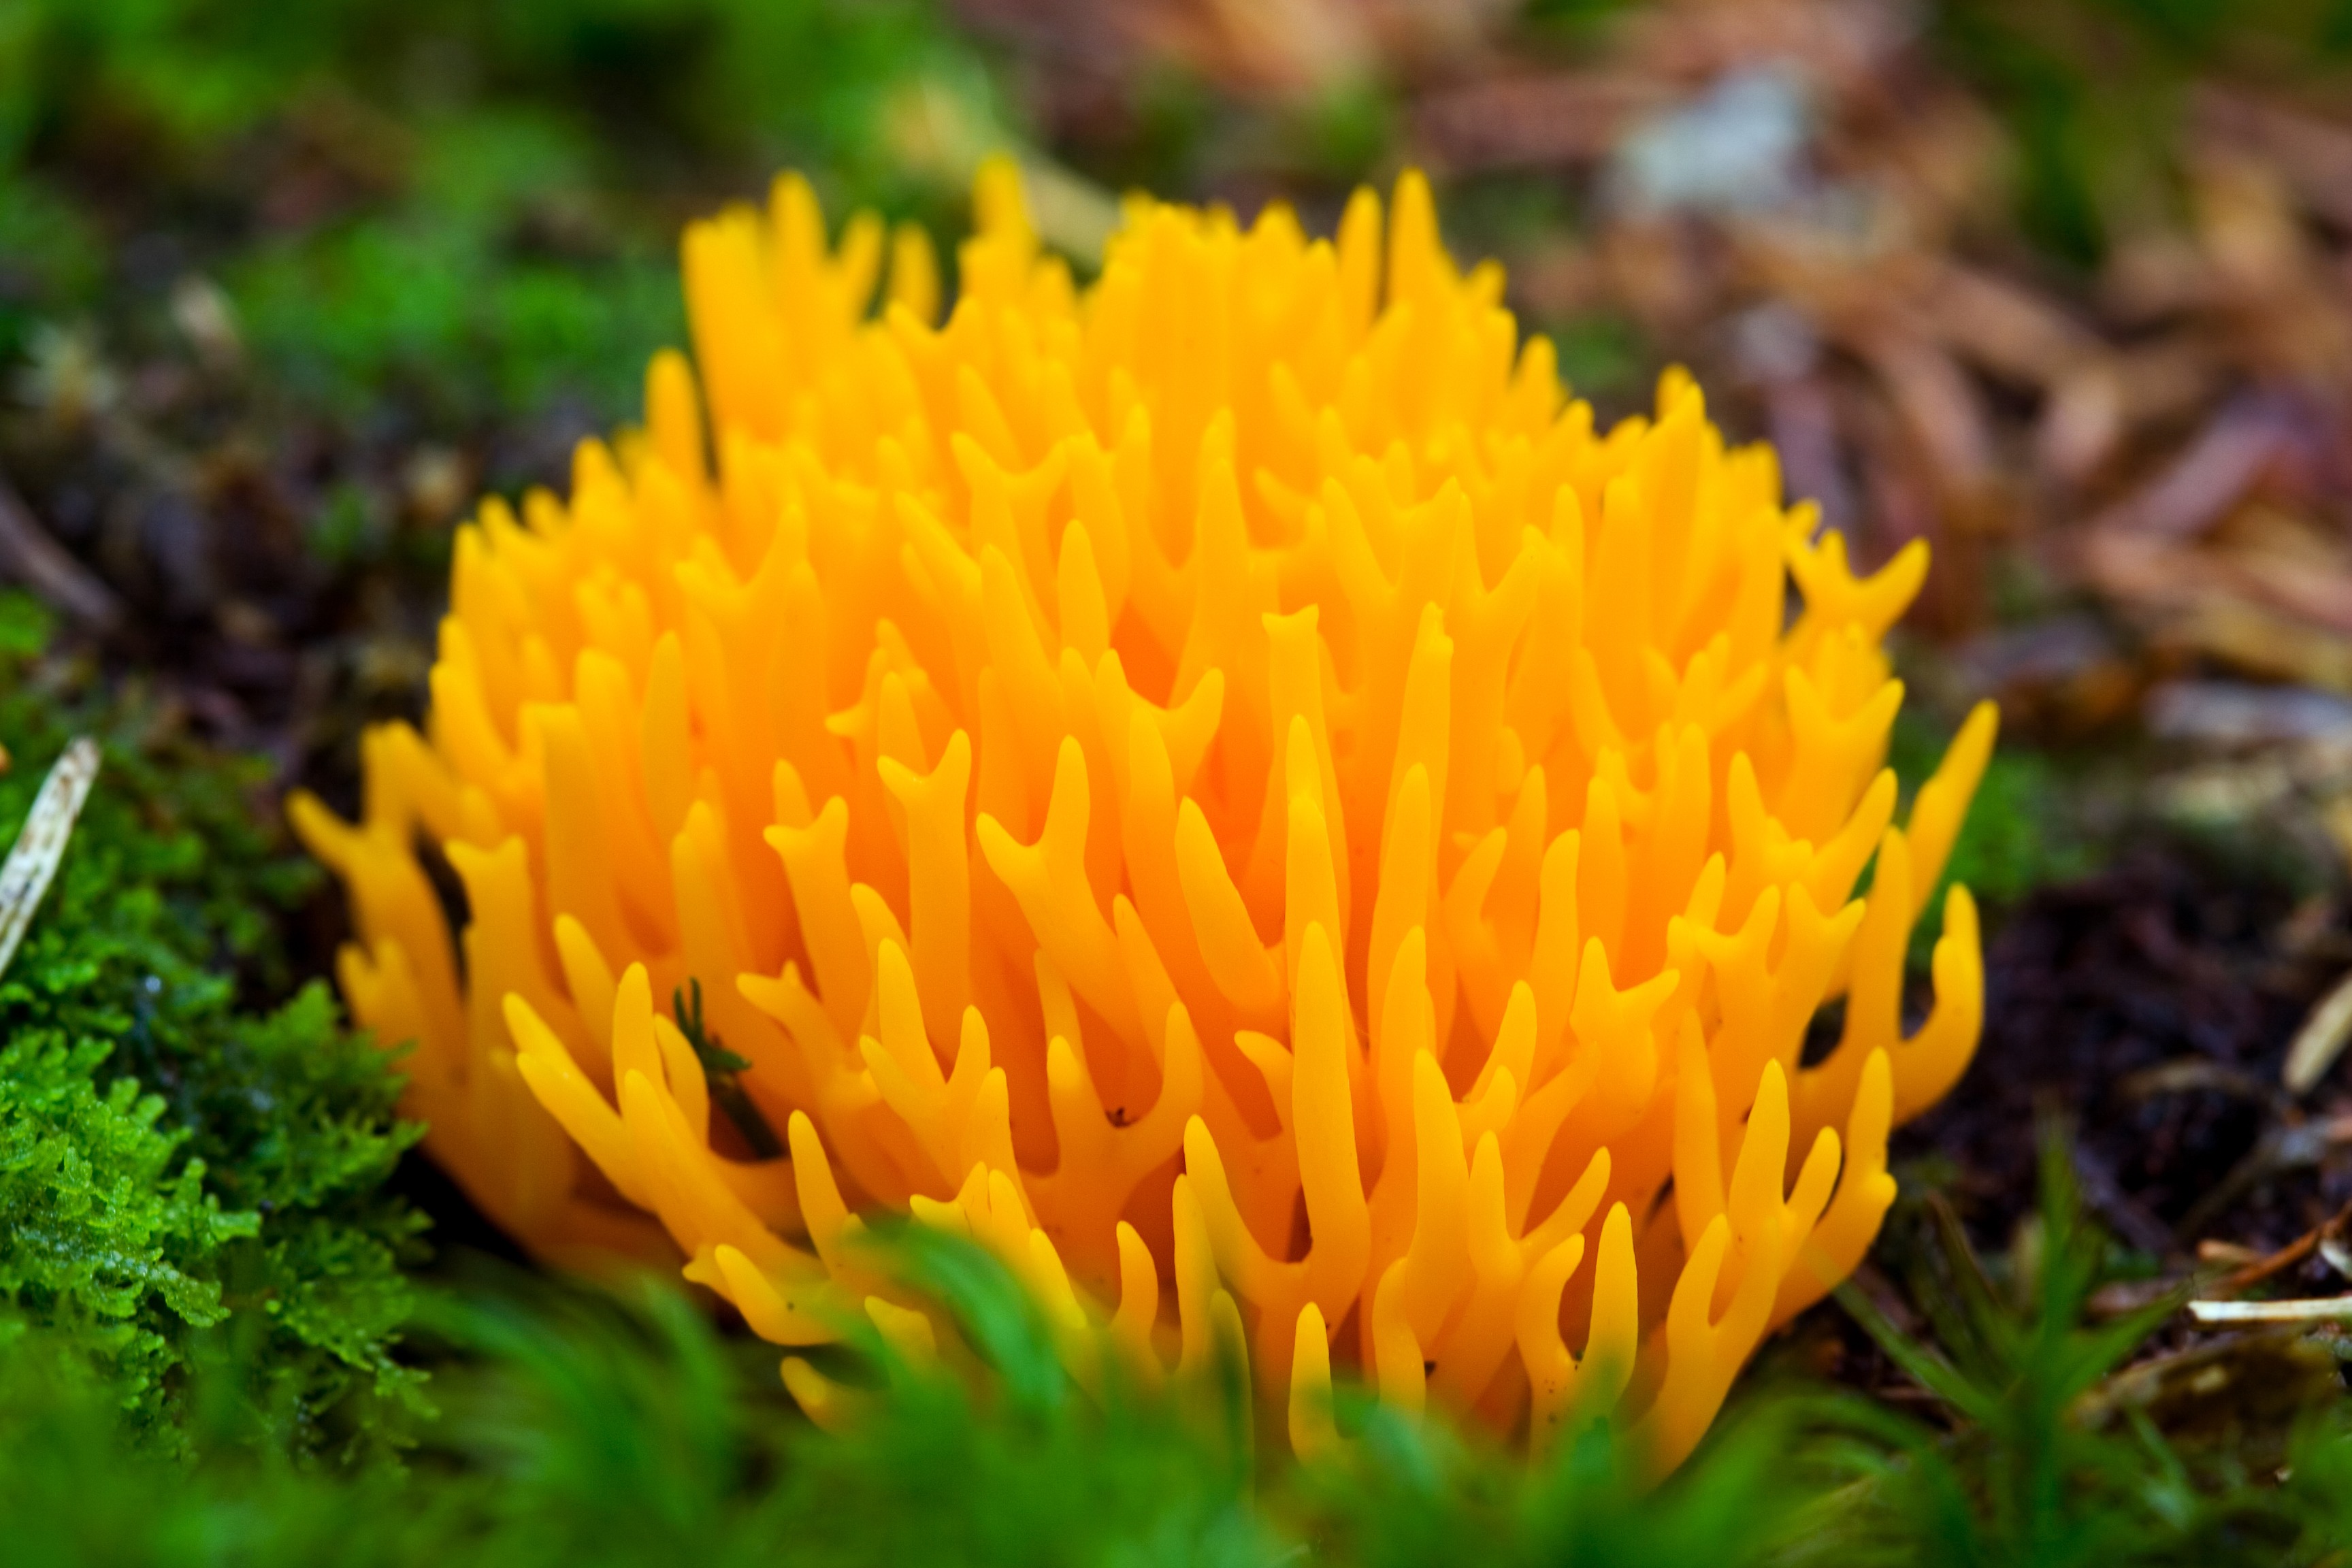 Желтый гриб